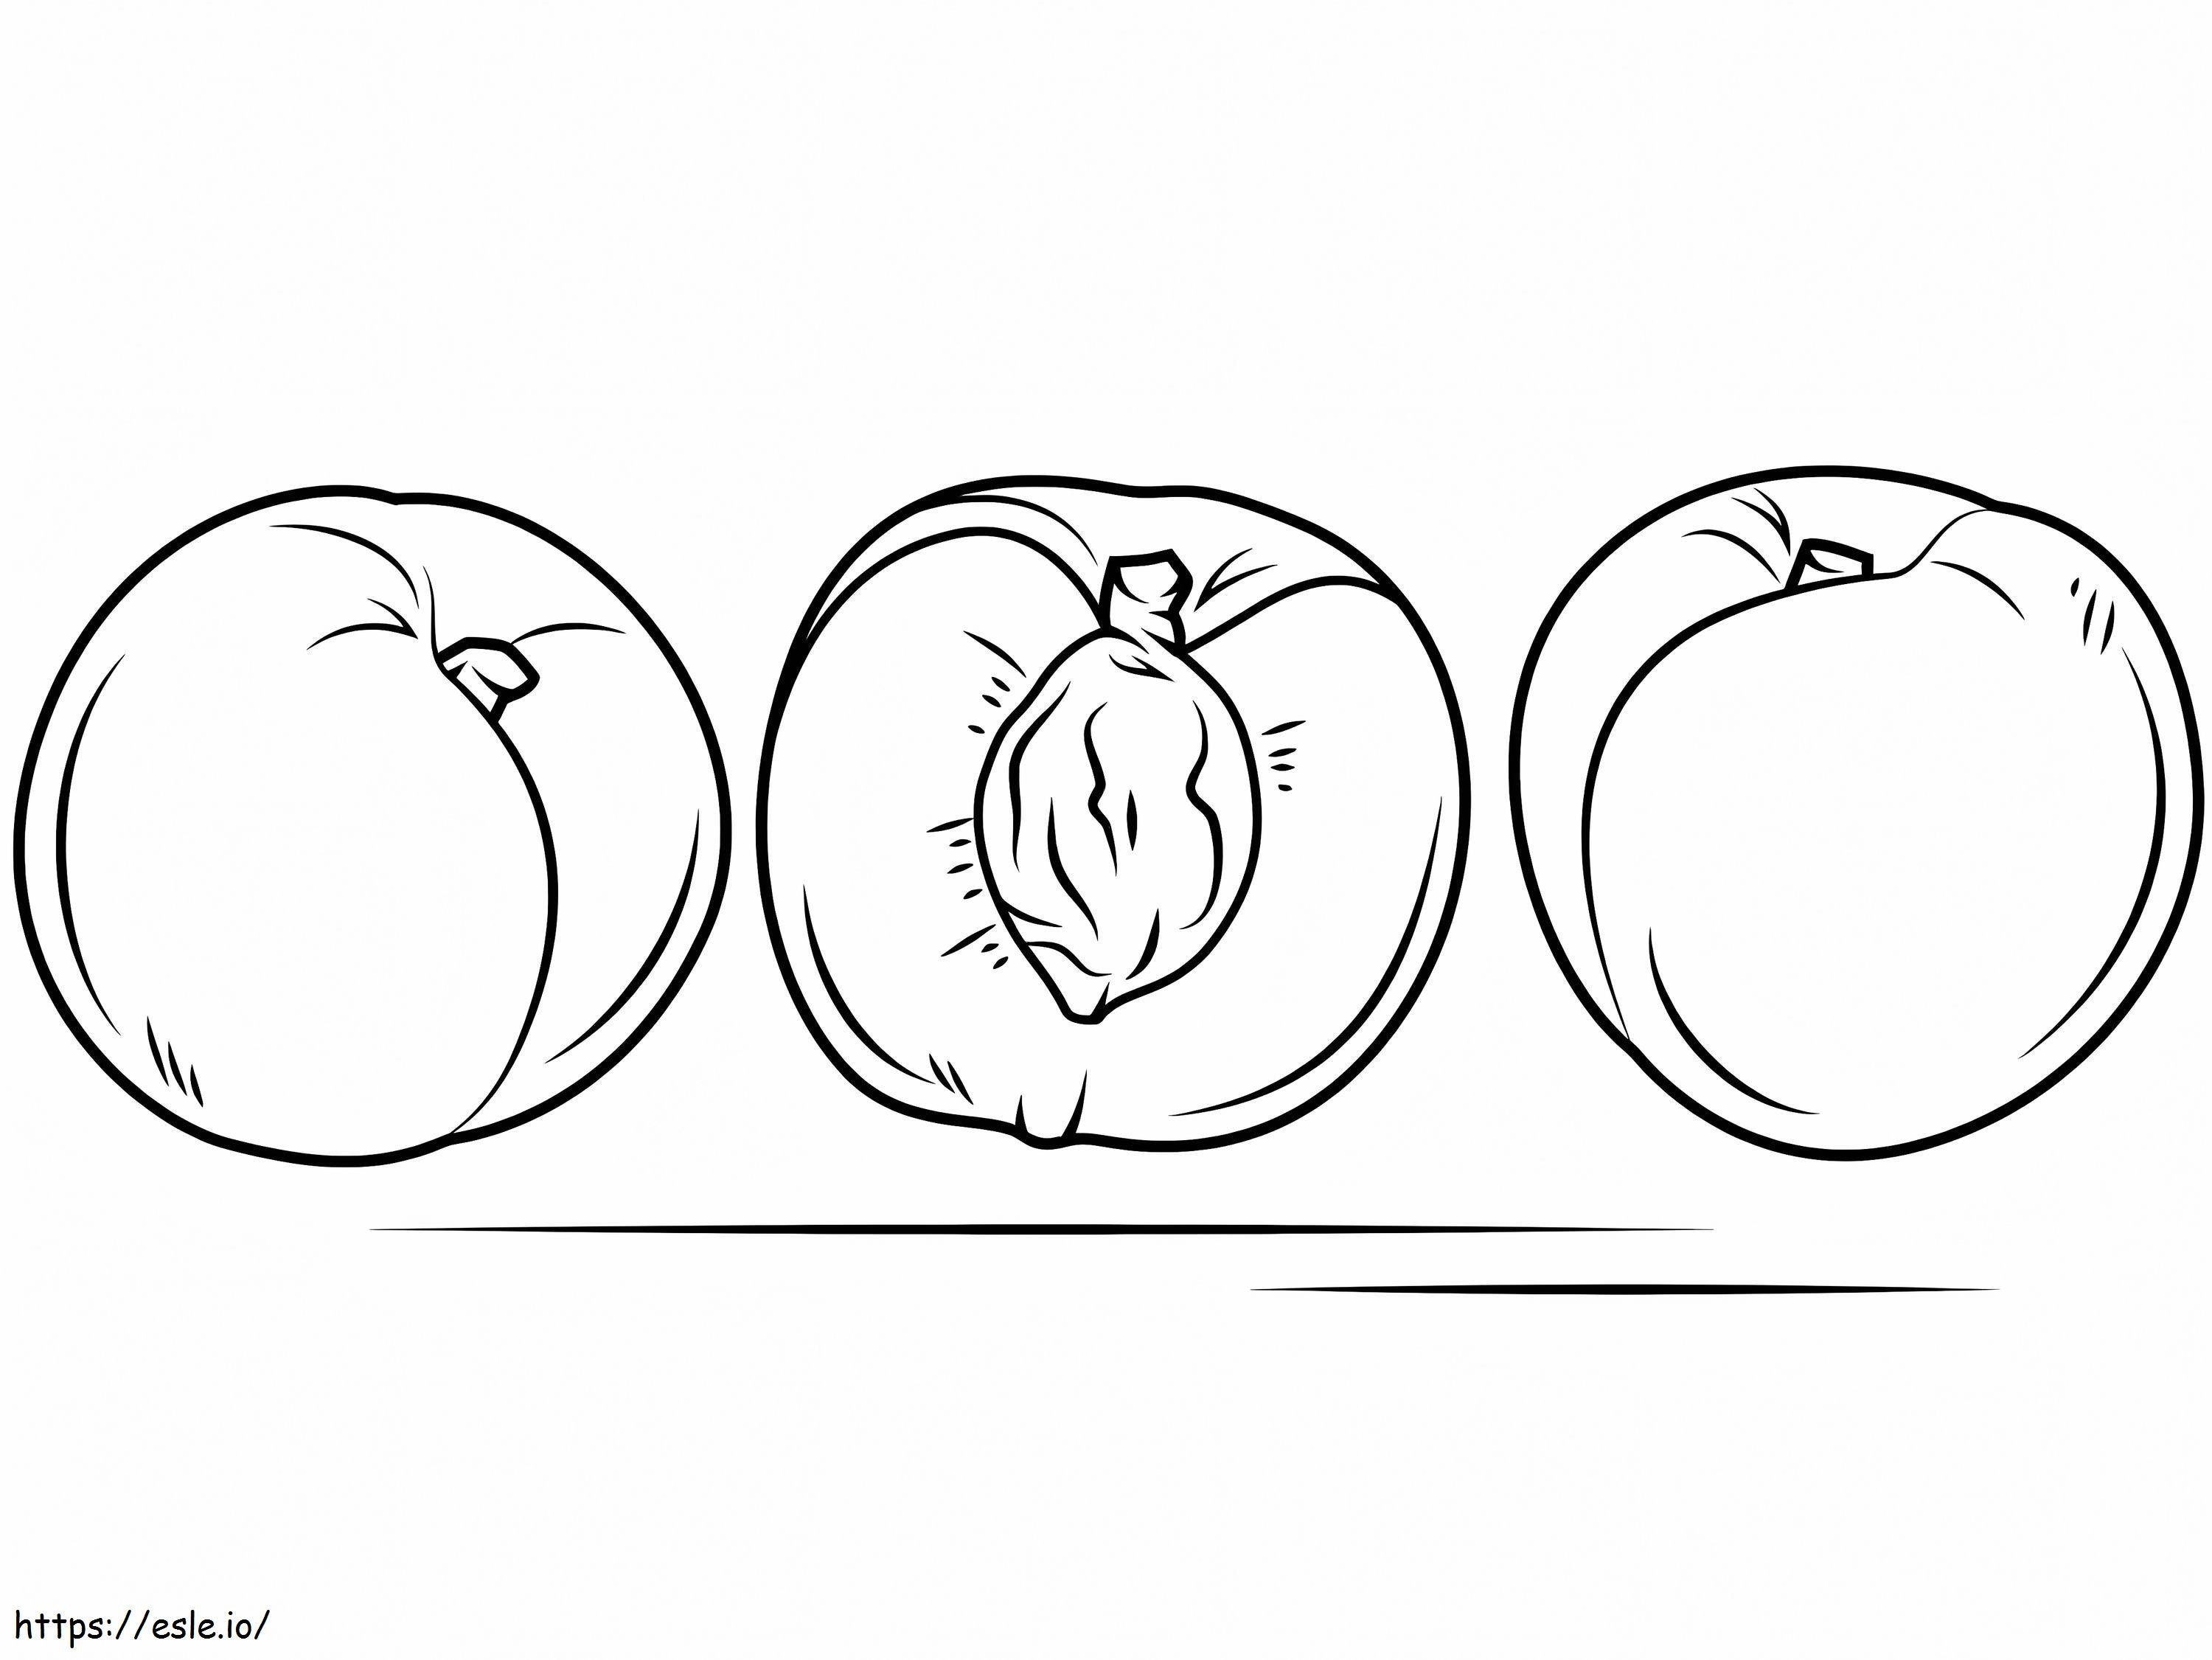 Pfirsichfrüchte ausmalbilder